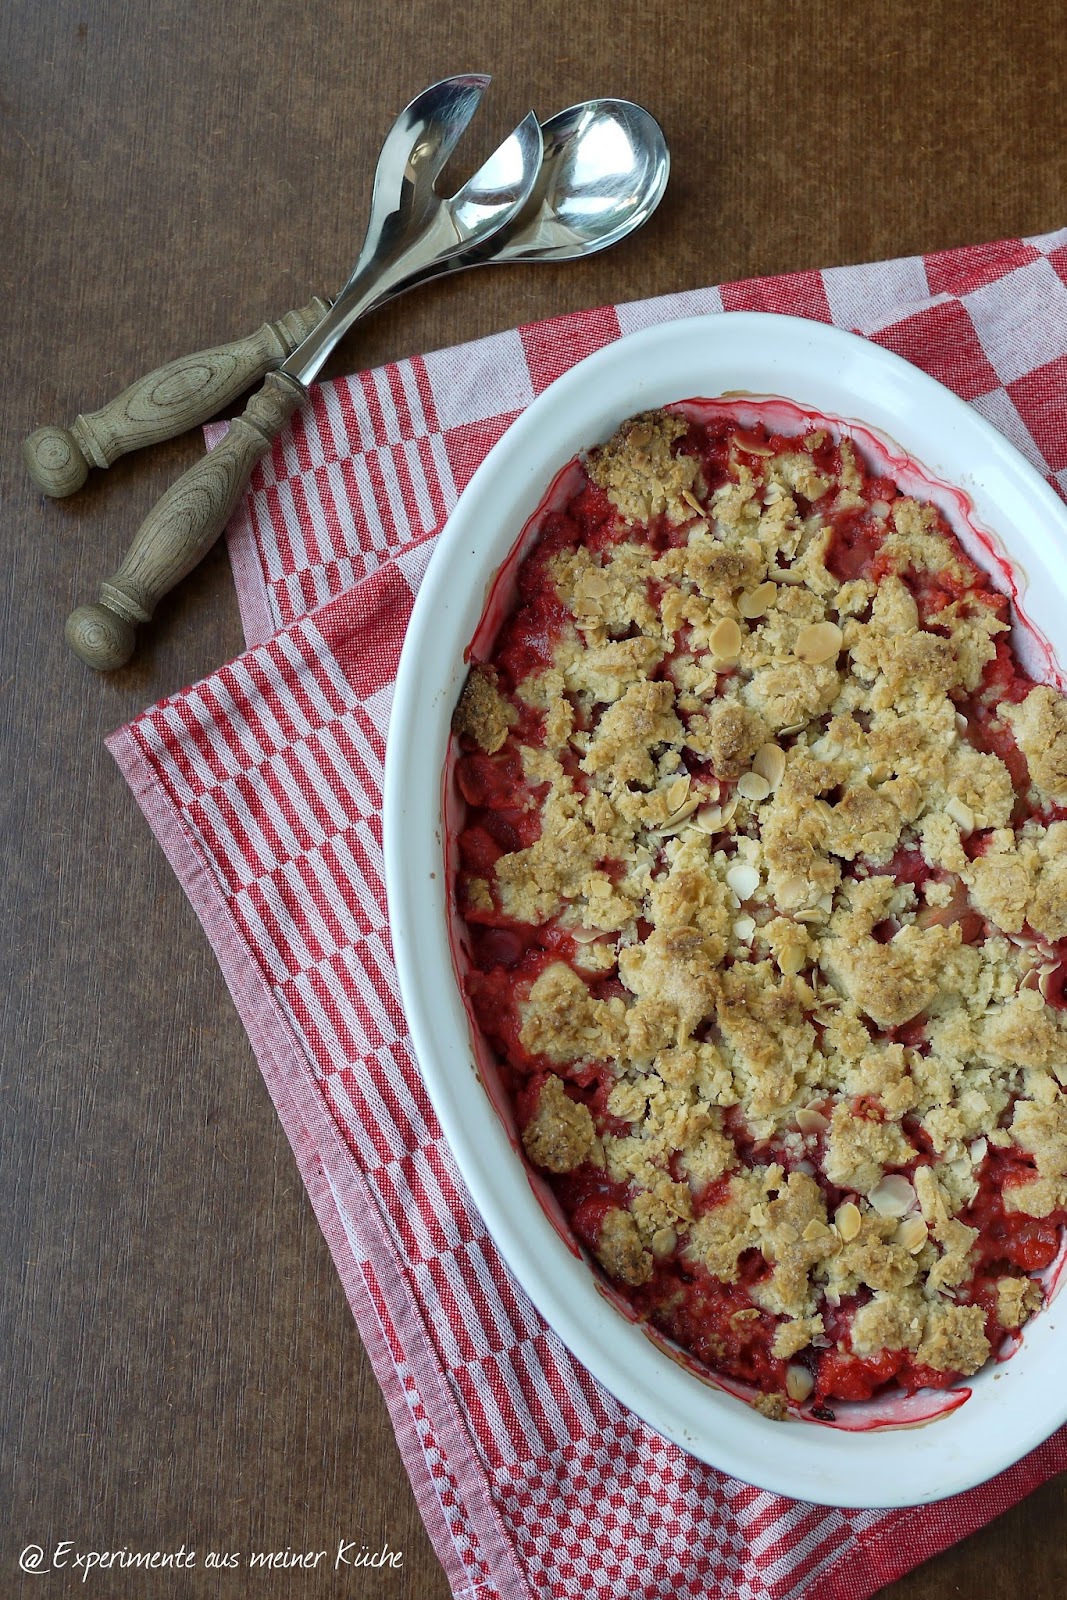 Experimente aus meiner Küche: Erdbeer-Rhabarber-Crumble mit Mandeln